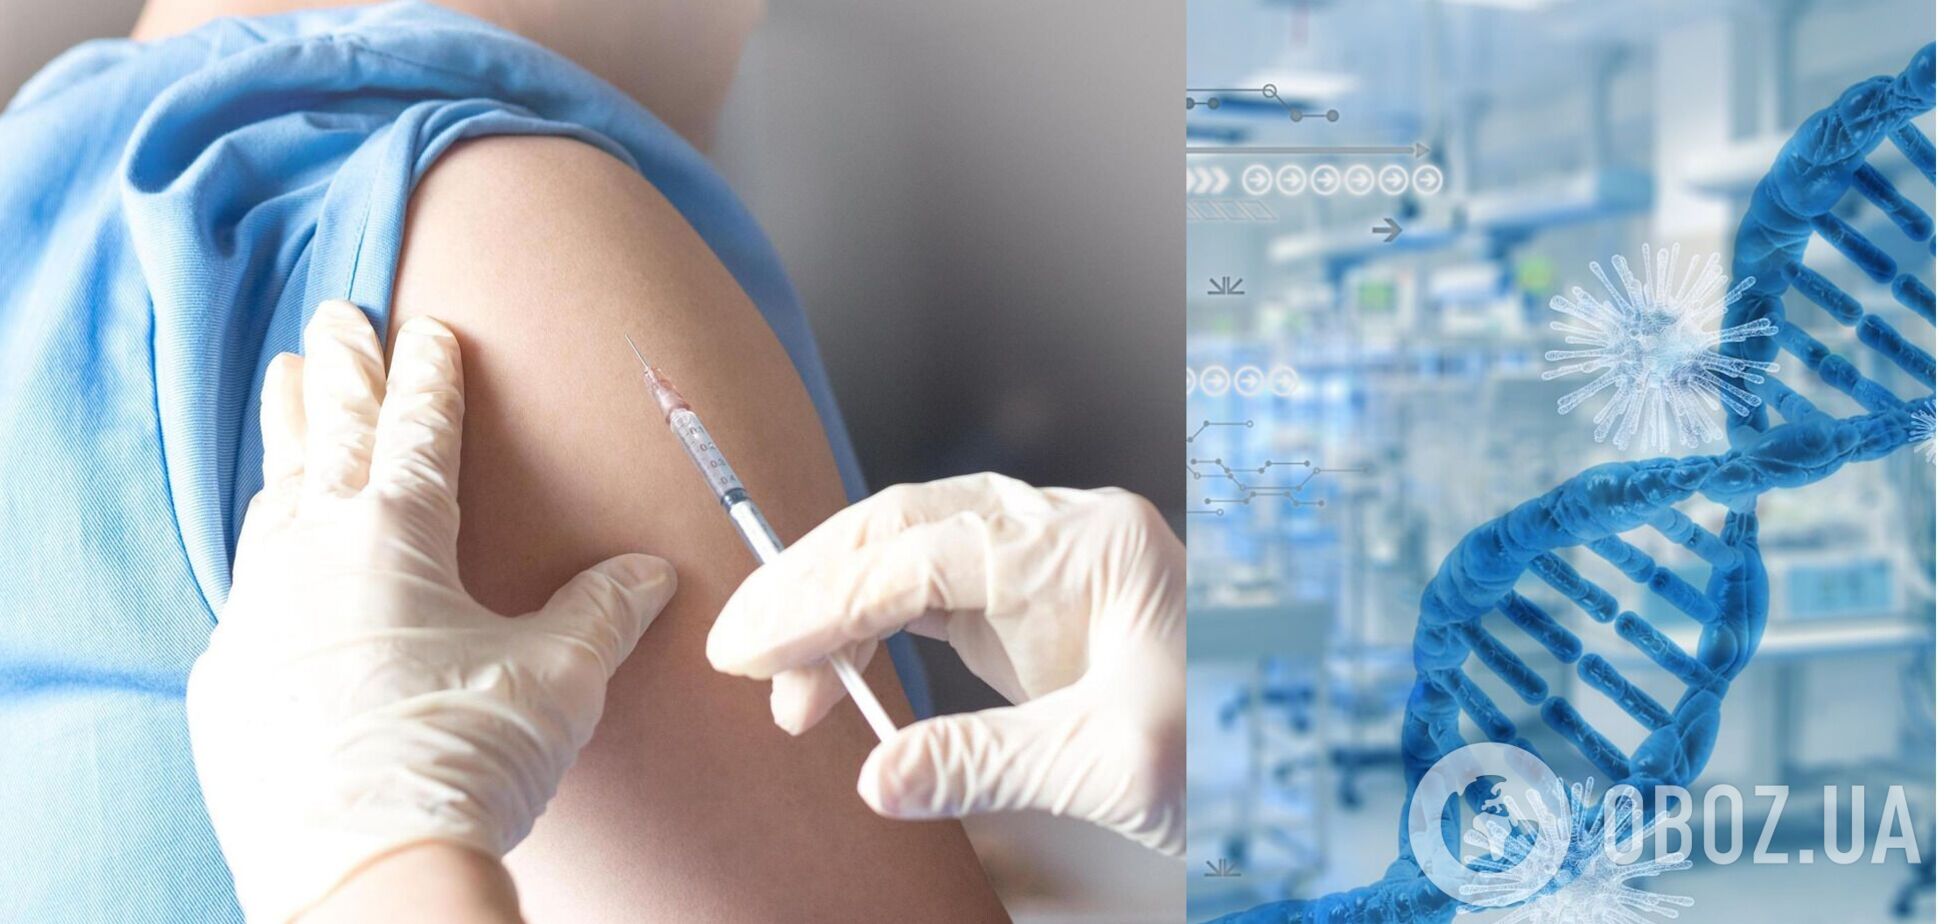 Украина заняла 81 место в мировом рейтинге вакцинации против COVID-19